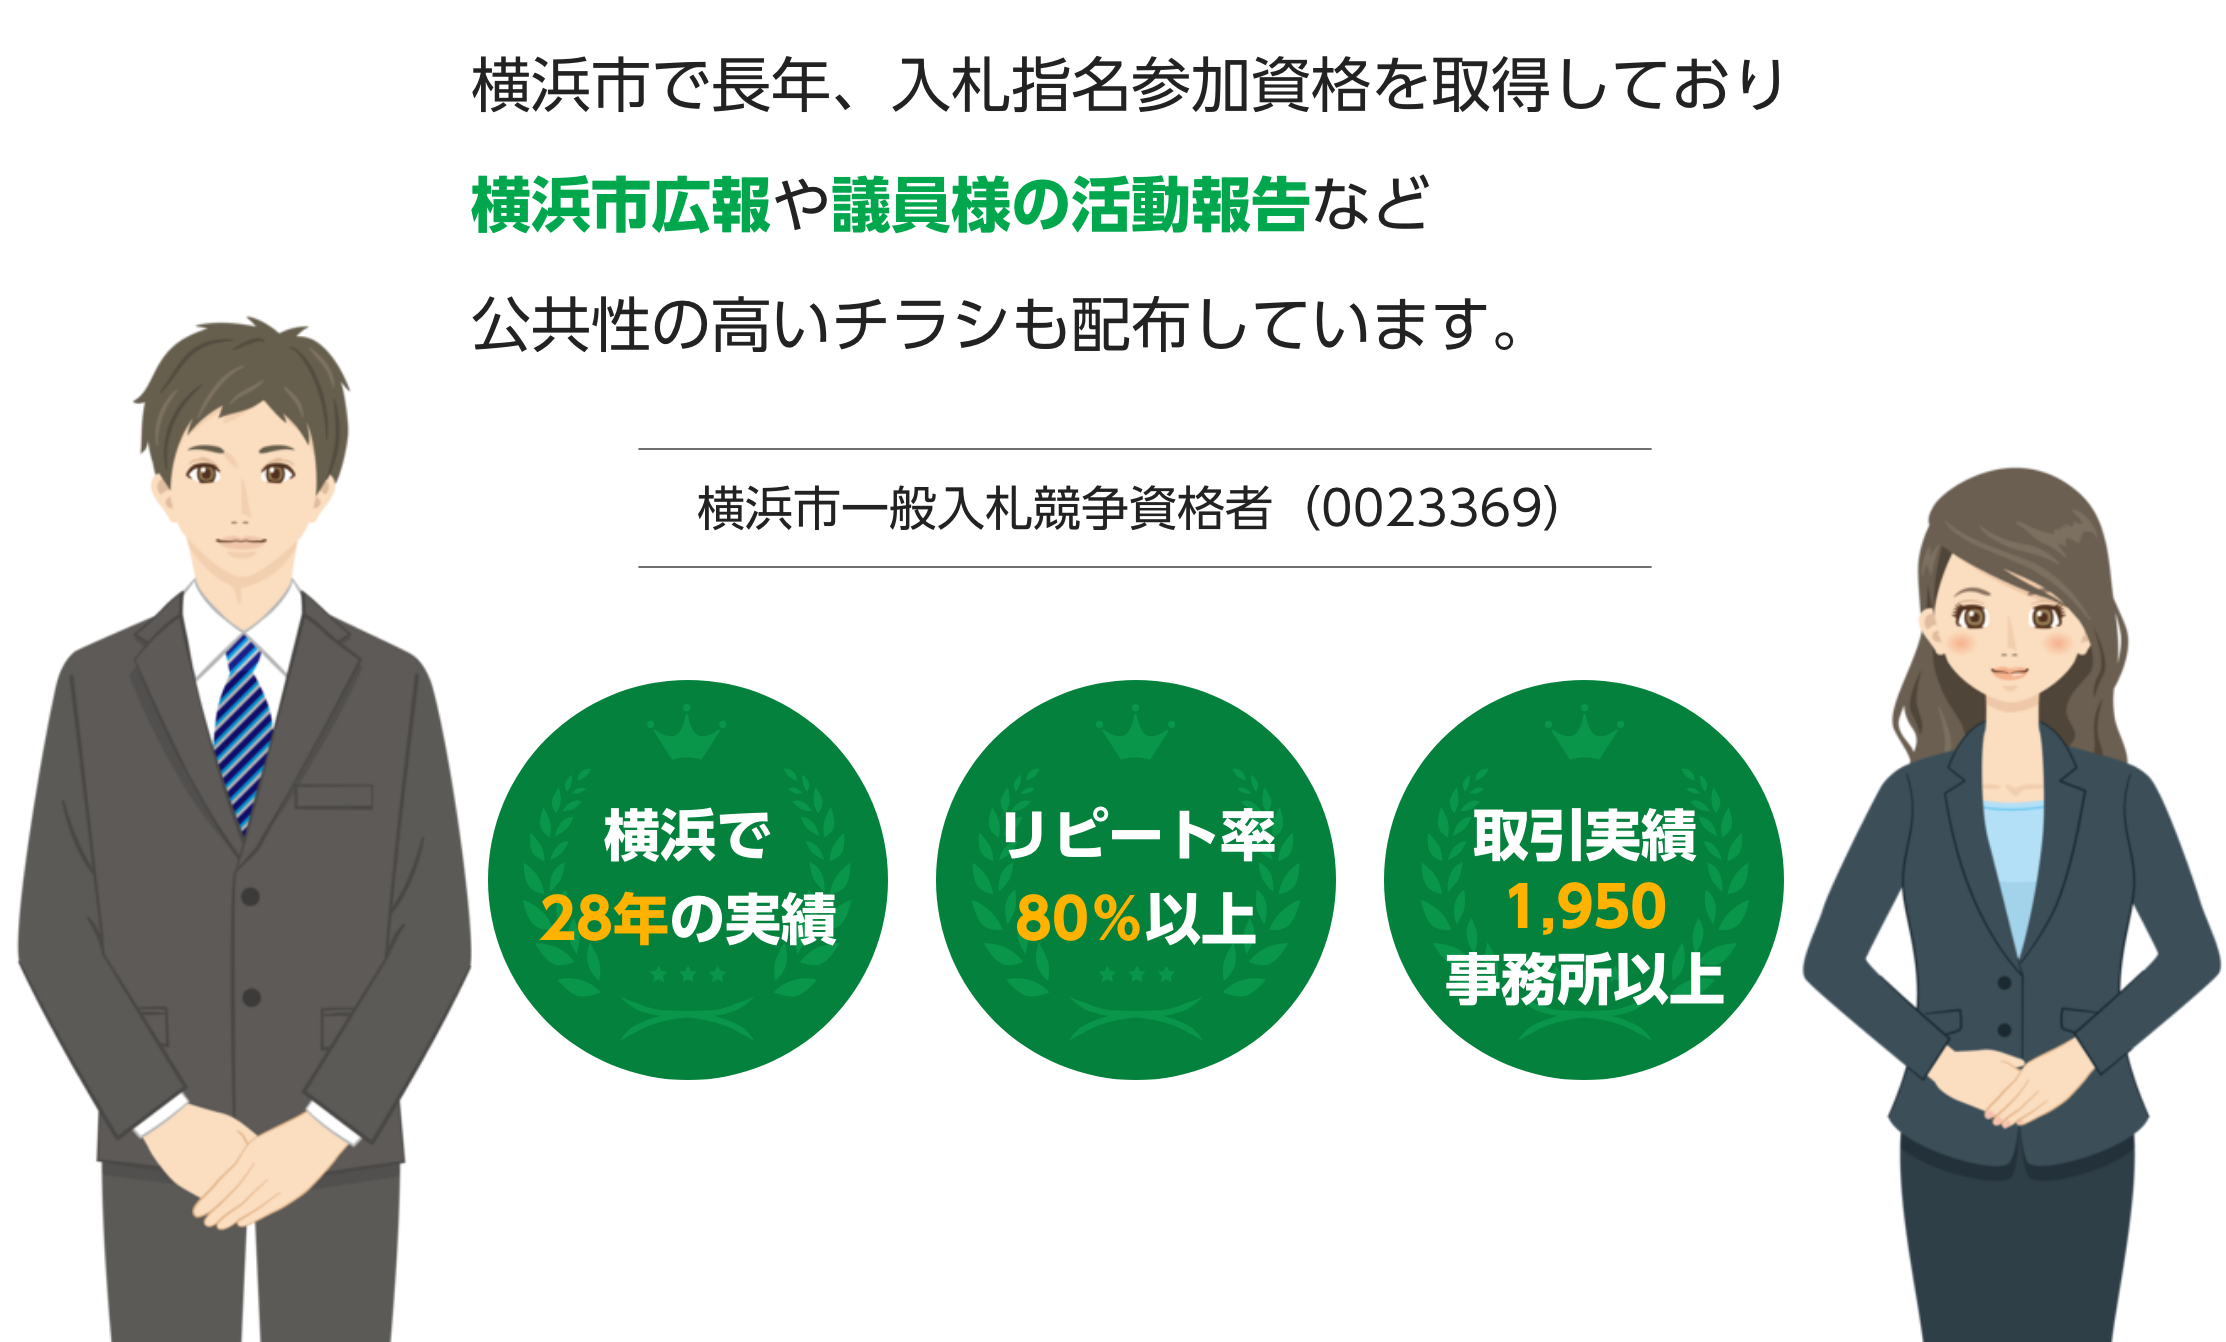 横浜市で長年、入札指名参加資格を取得しており横浜市広報や議員様の活動報告など公共性の高いチラシも配布しています。